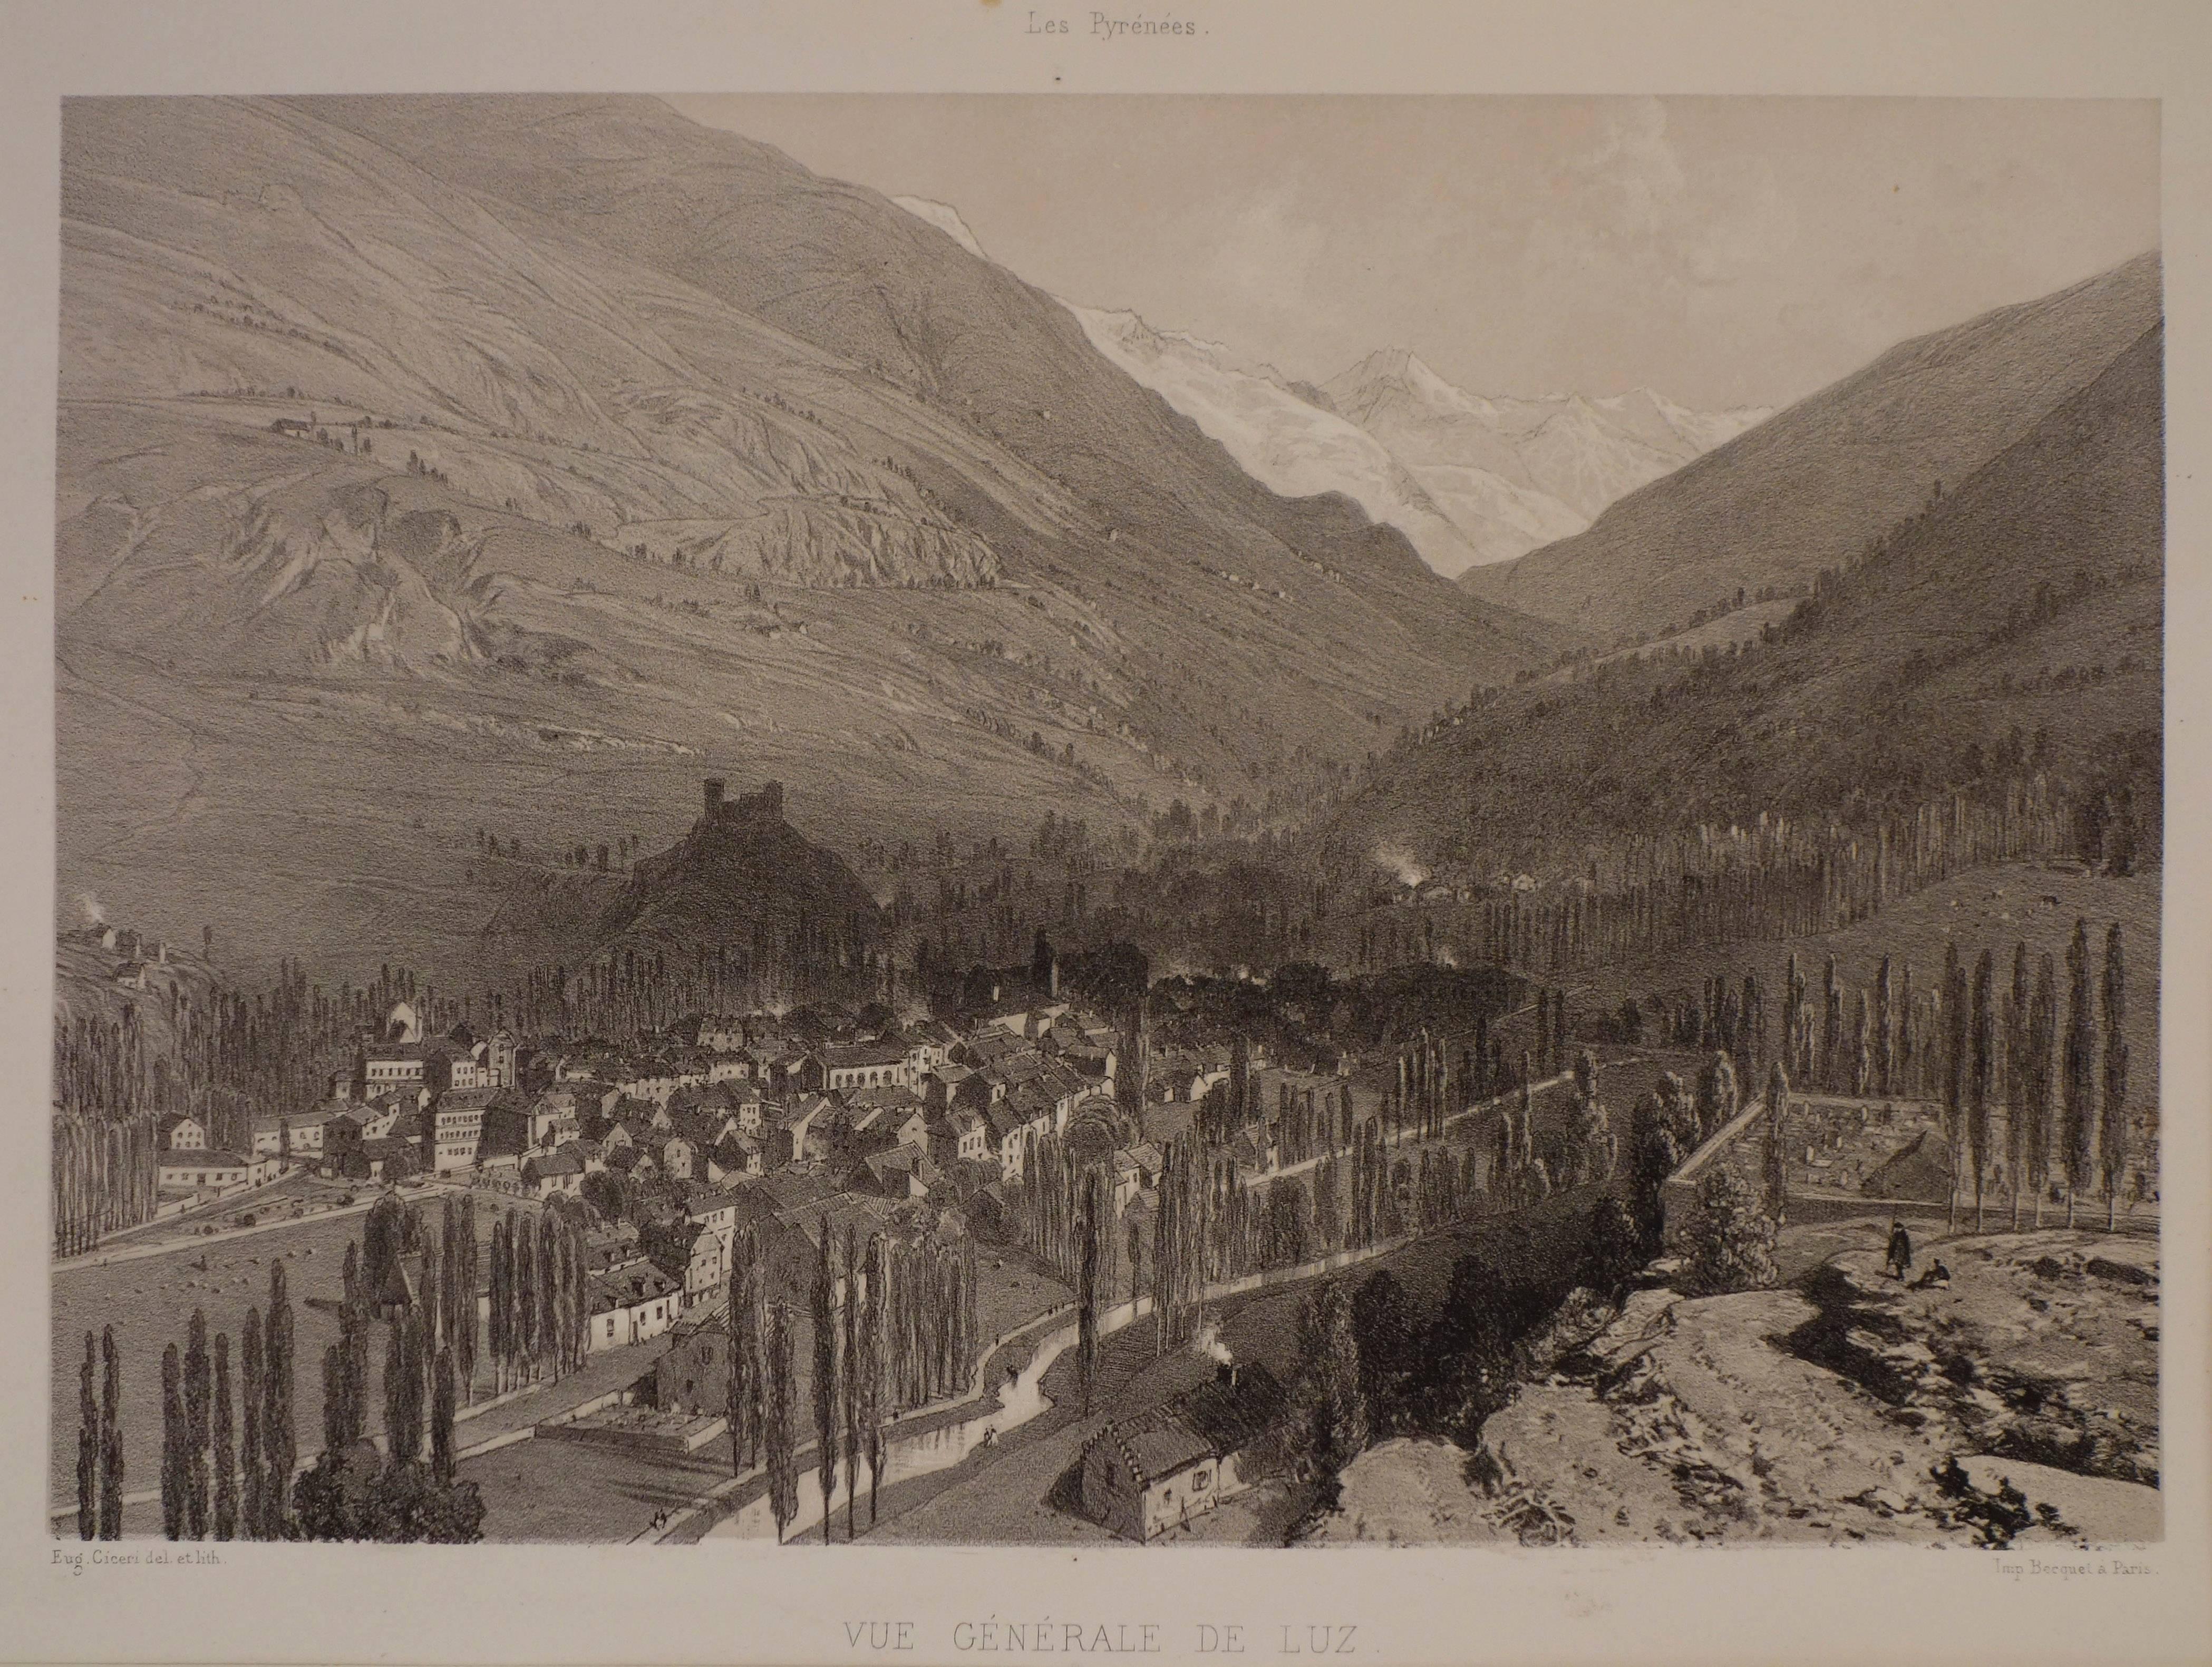 View of Luz (Saint-Sauveur) France - Print by Eugene Ciceri